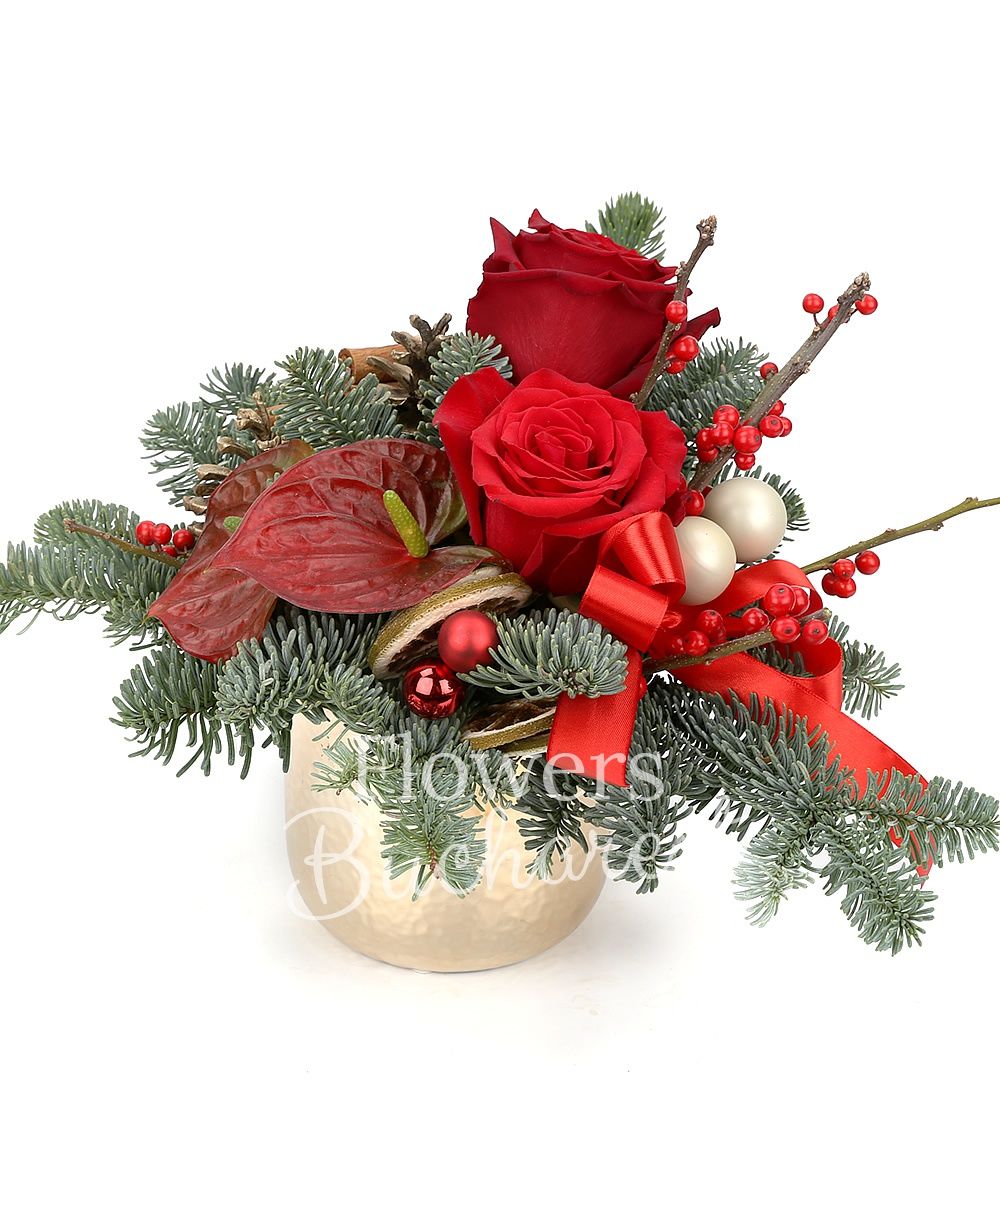 2 red roses, ilex, anthurium, fir, christmas decorations, ceramic vase